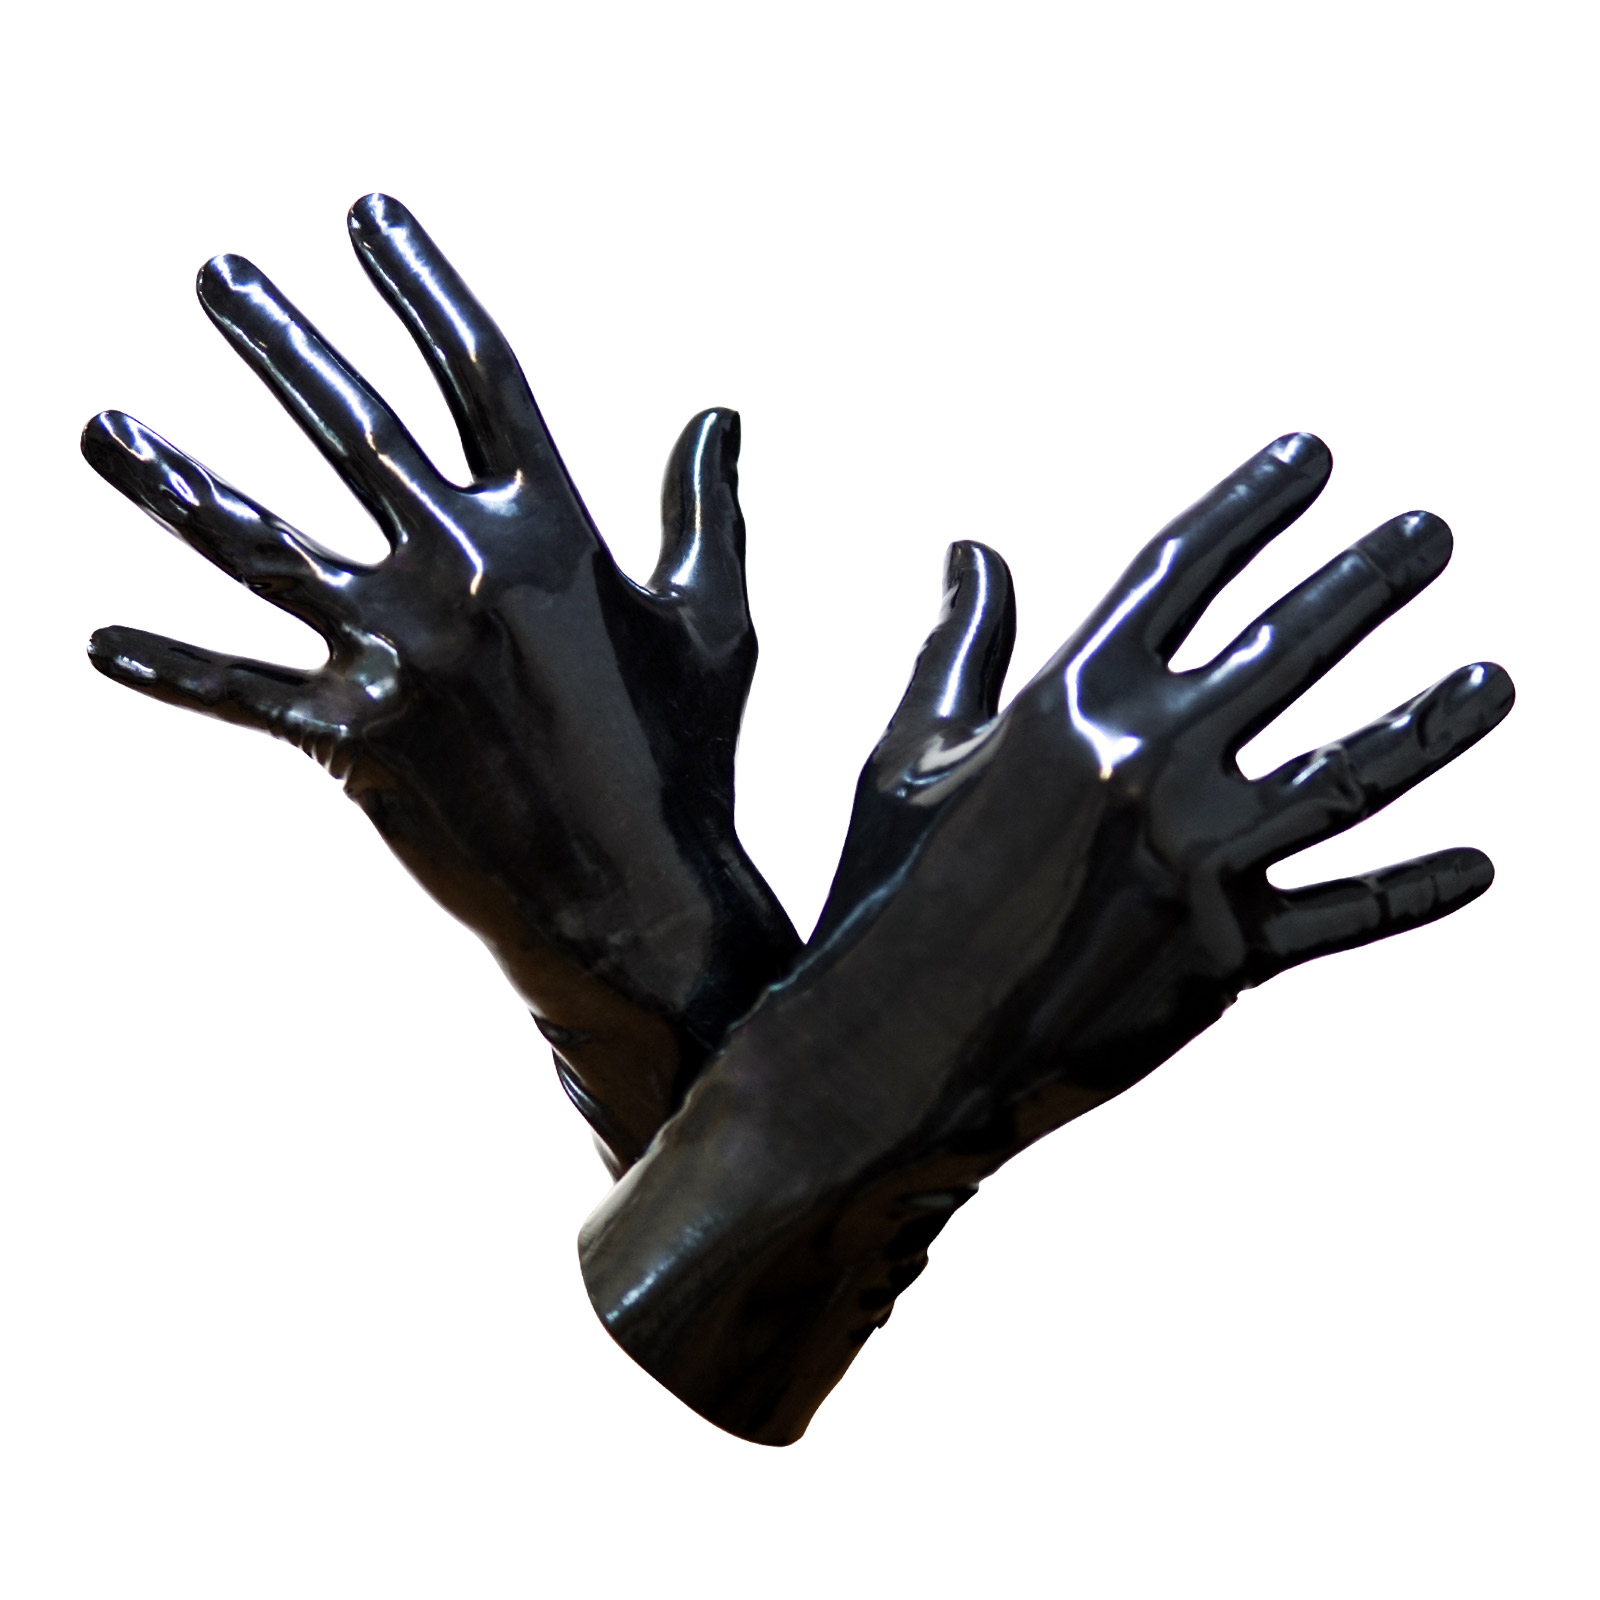 Toylie Latex Handschuhe «S» schwarz, nahtlos, mit anatomischer Passform